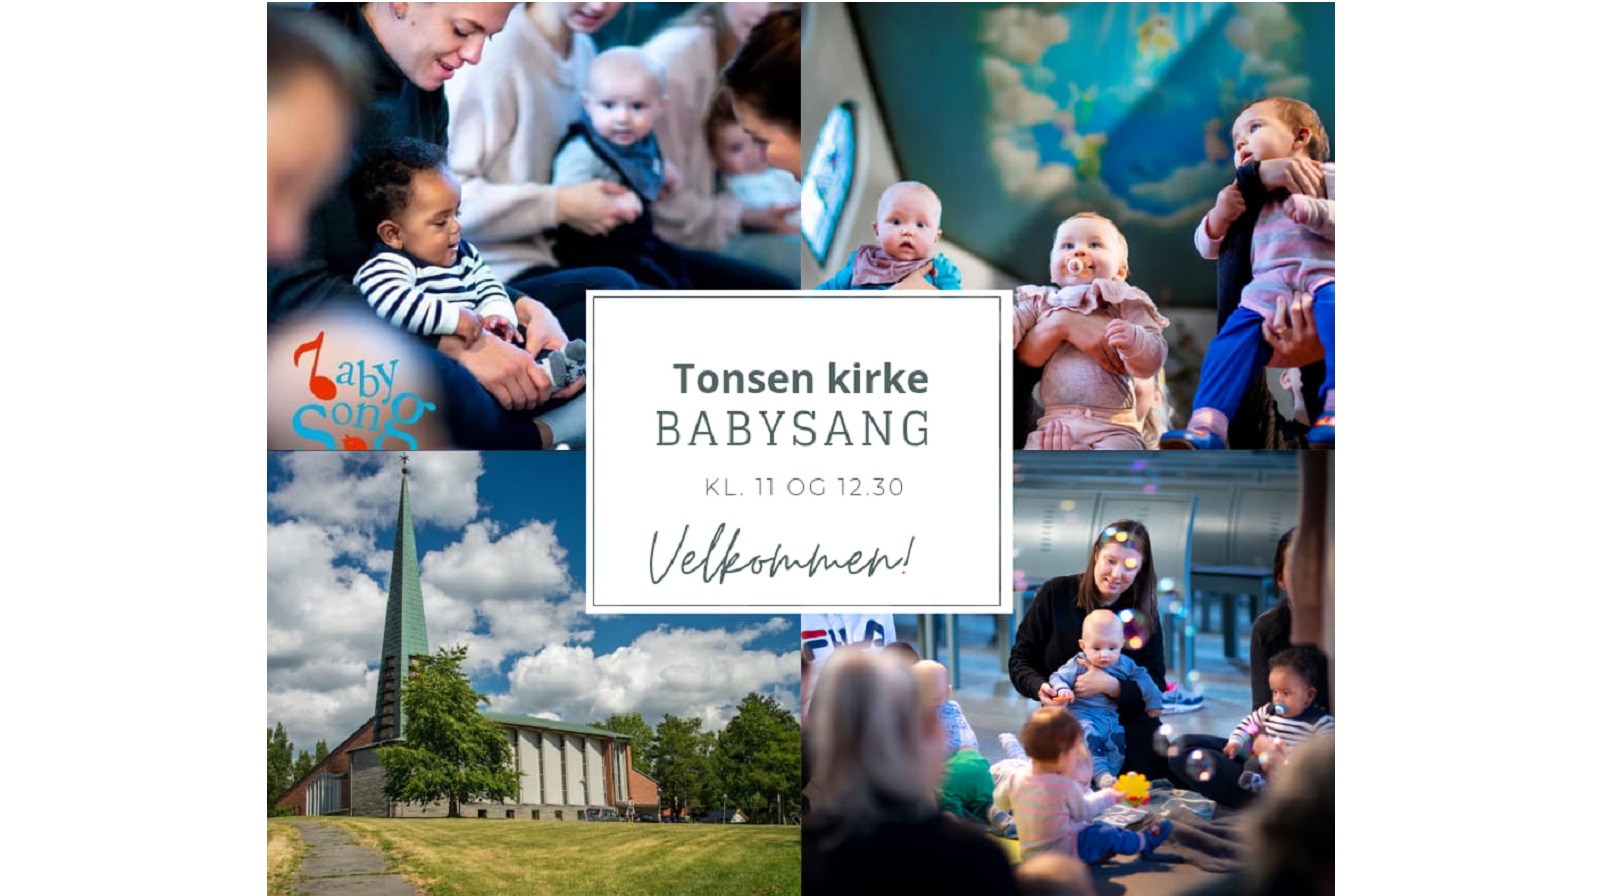 Babysang i Tonsen kirke